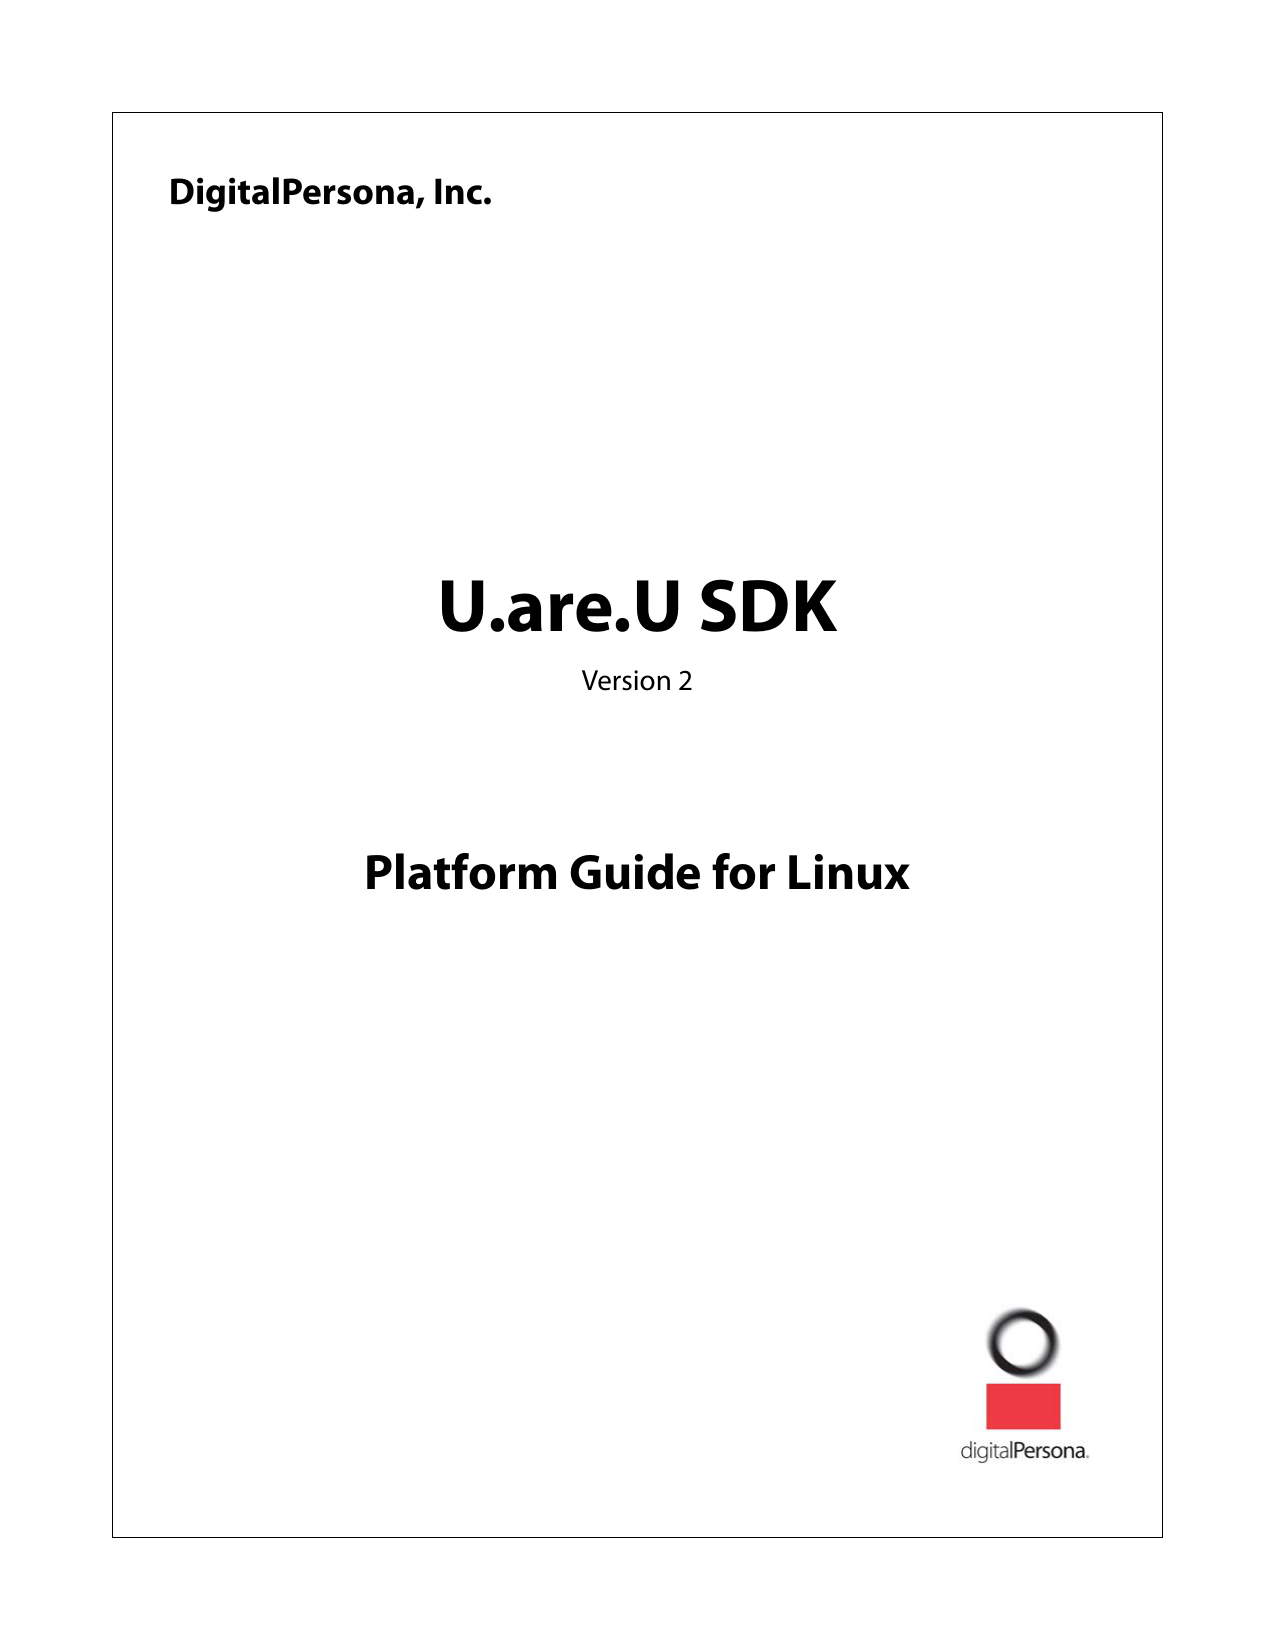 sdk digitalpersona 4500 linux